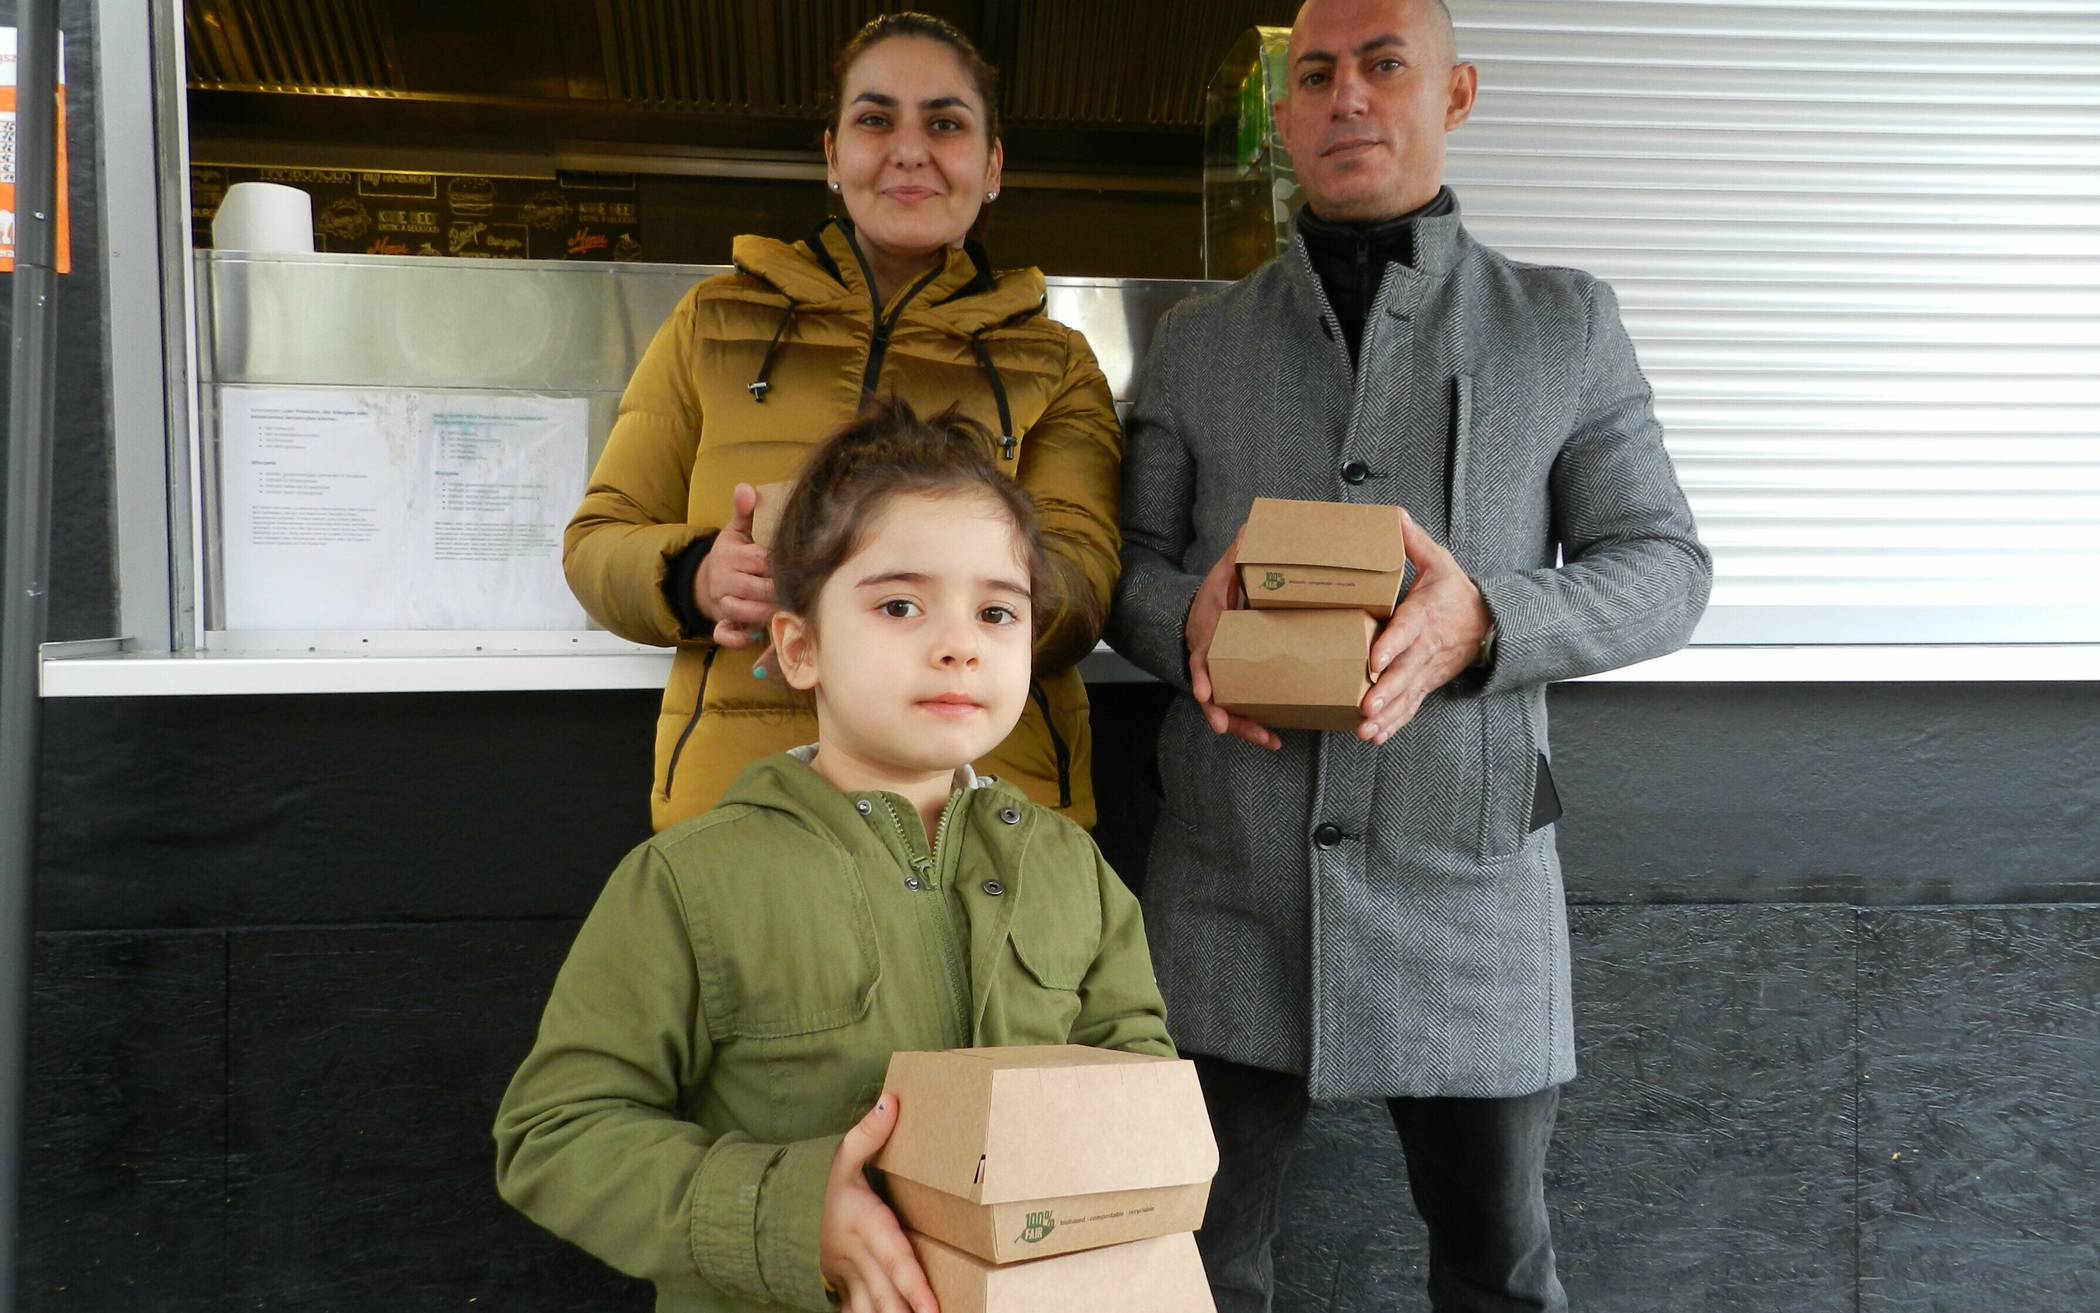  Marianna Yeritsyan mit Tochter Victoria und ihrem Ehemann Vardan Harutyunyan am Burger-Stand im Neusser Barabaraviertel. Dort konnten sie vielen hungrigen Kindern eine Freude machen.  